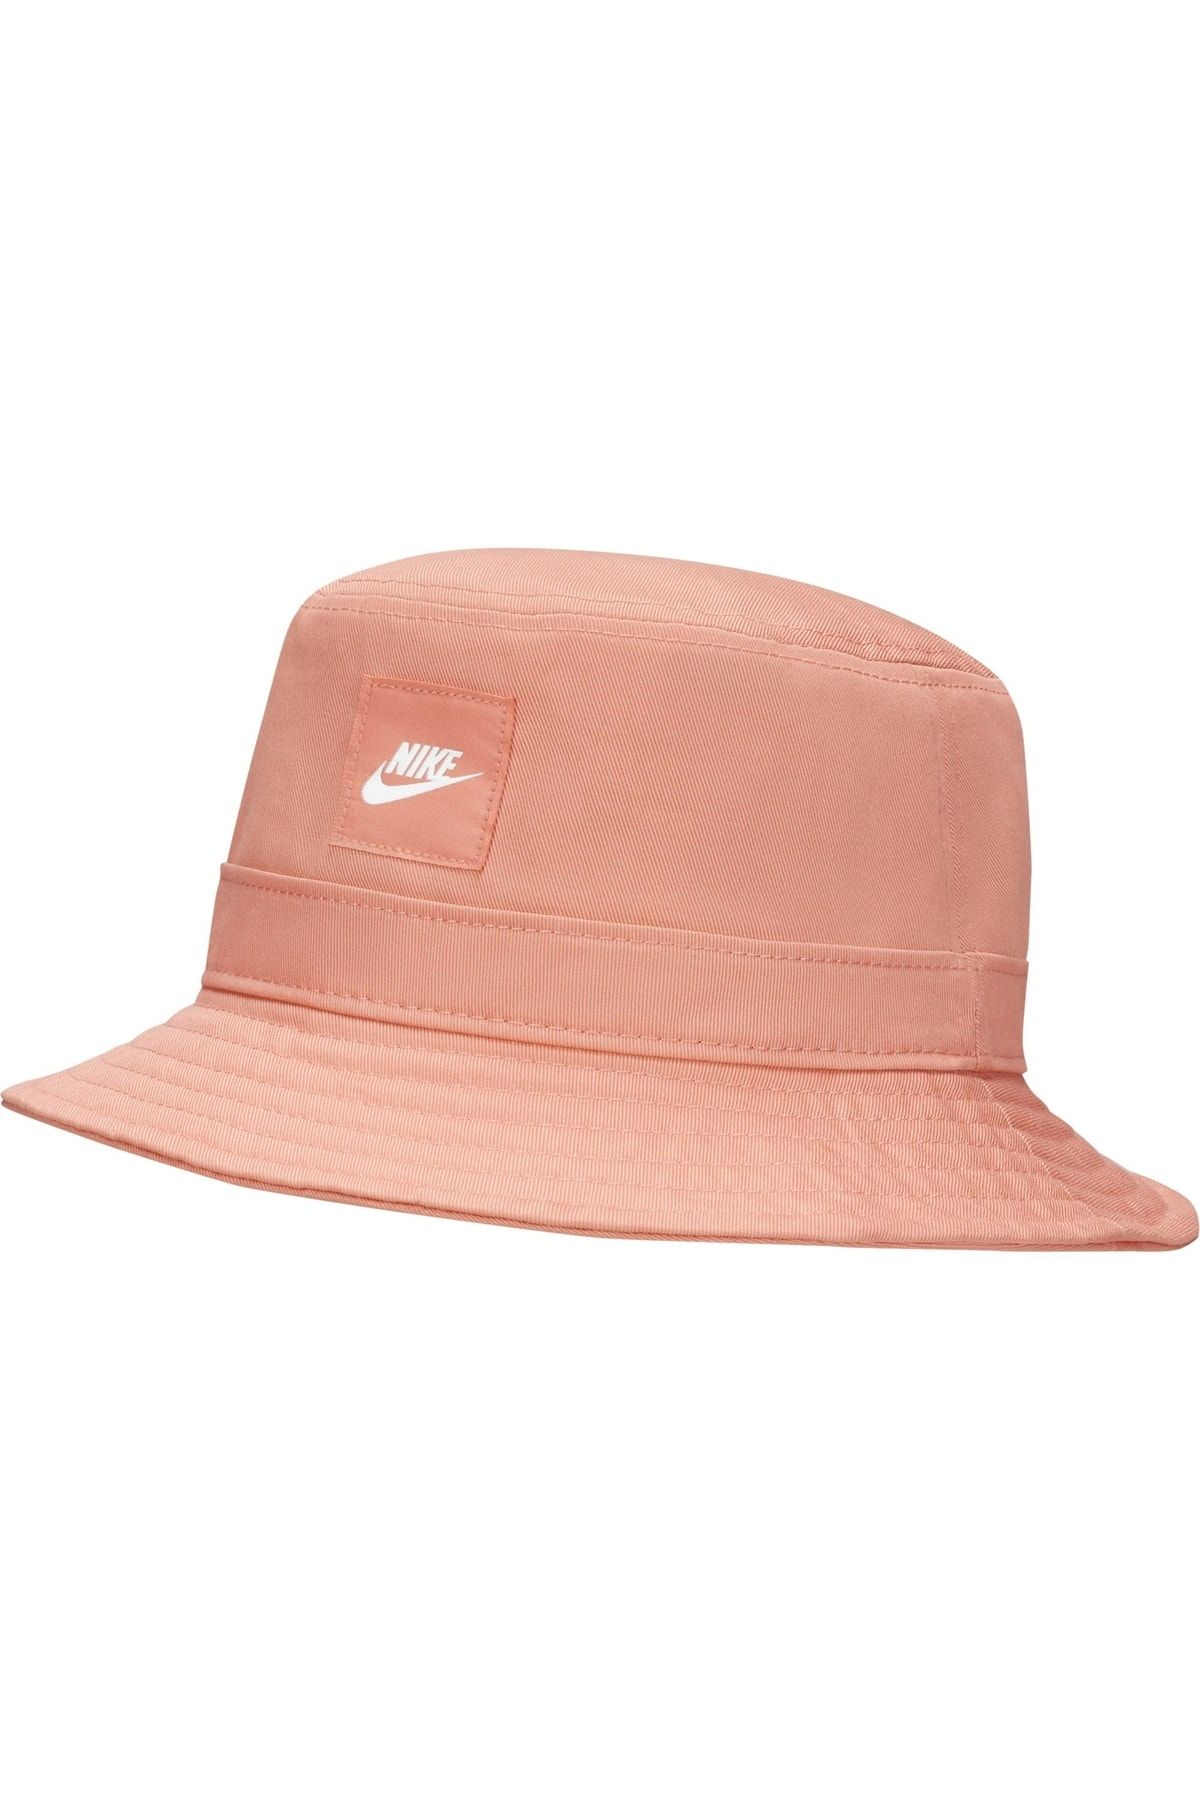 Nike Sportswear Bucket Unisex Şapka - Pembe #ck5324-824